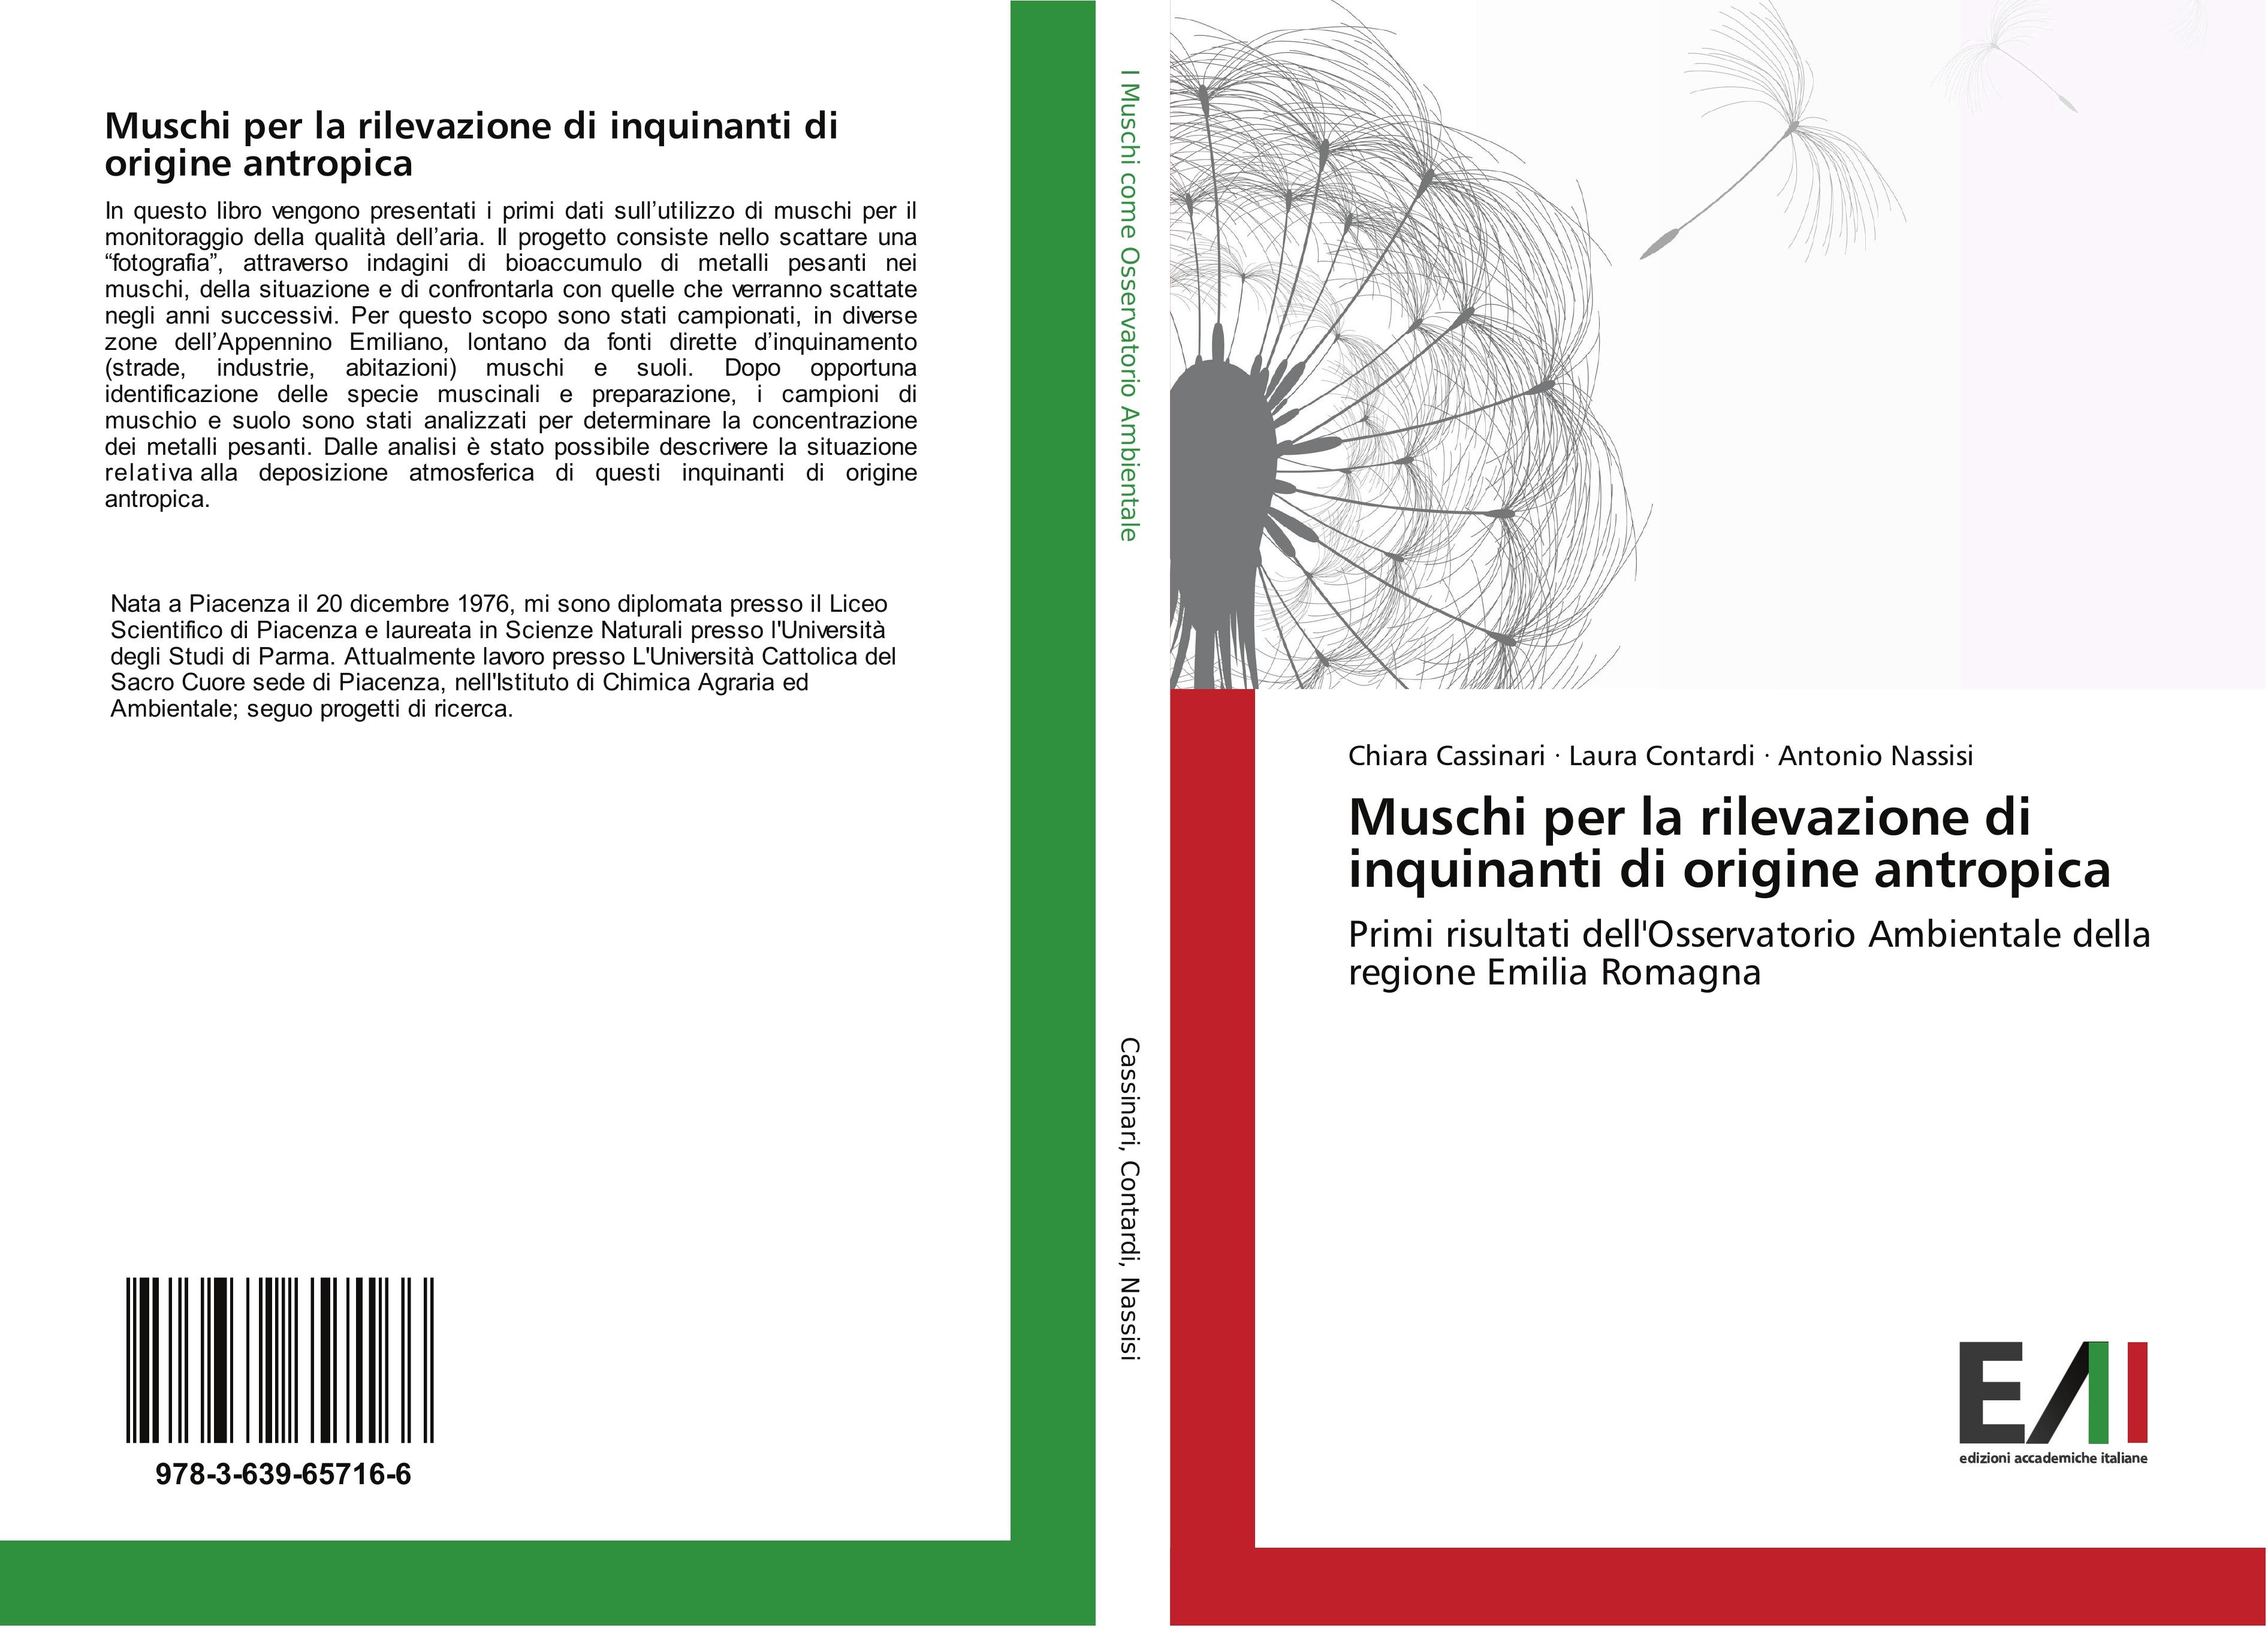 Muschi per la rilevazione di inquinanti di origine antropica - Chiara Cassinari|Laura Contardi|Antonio Nassisi